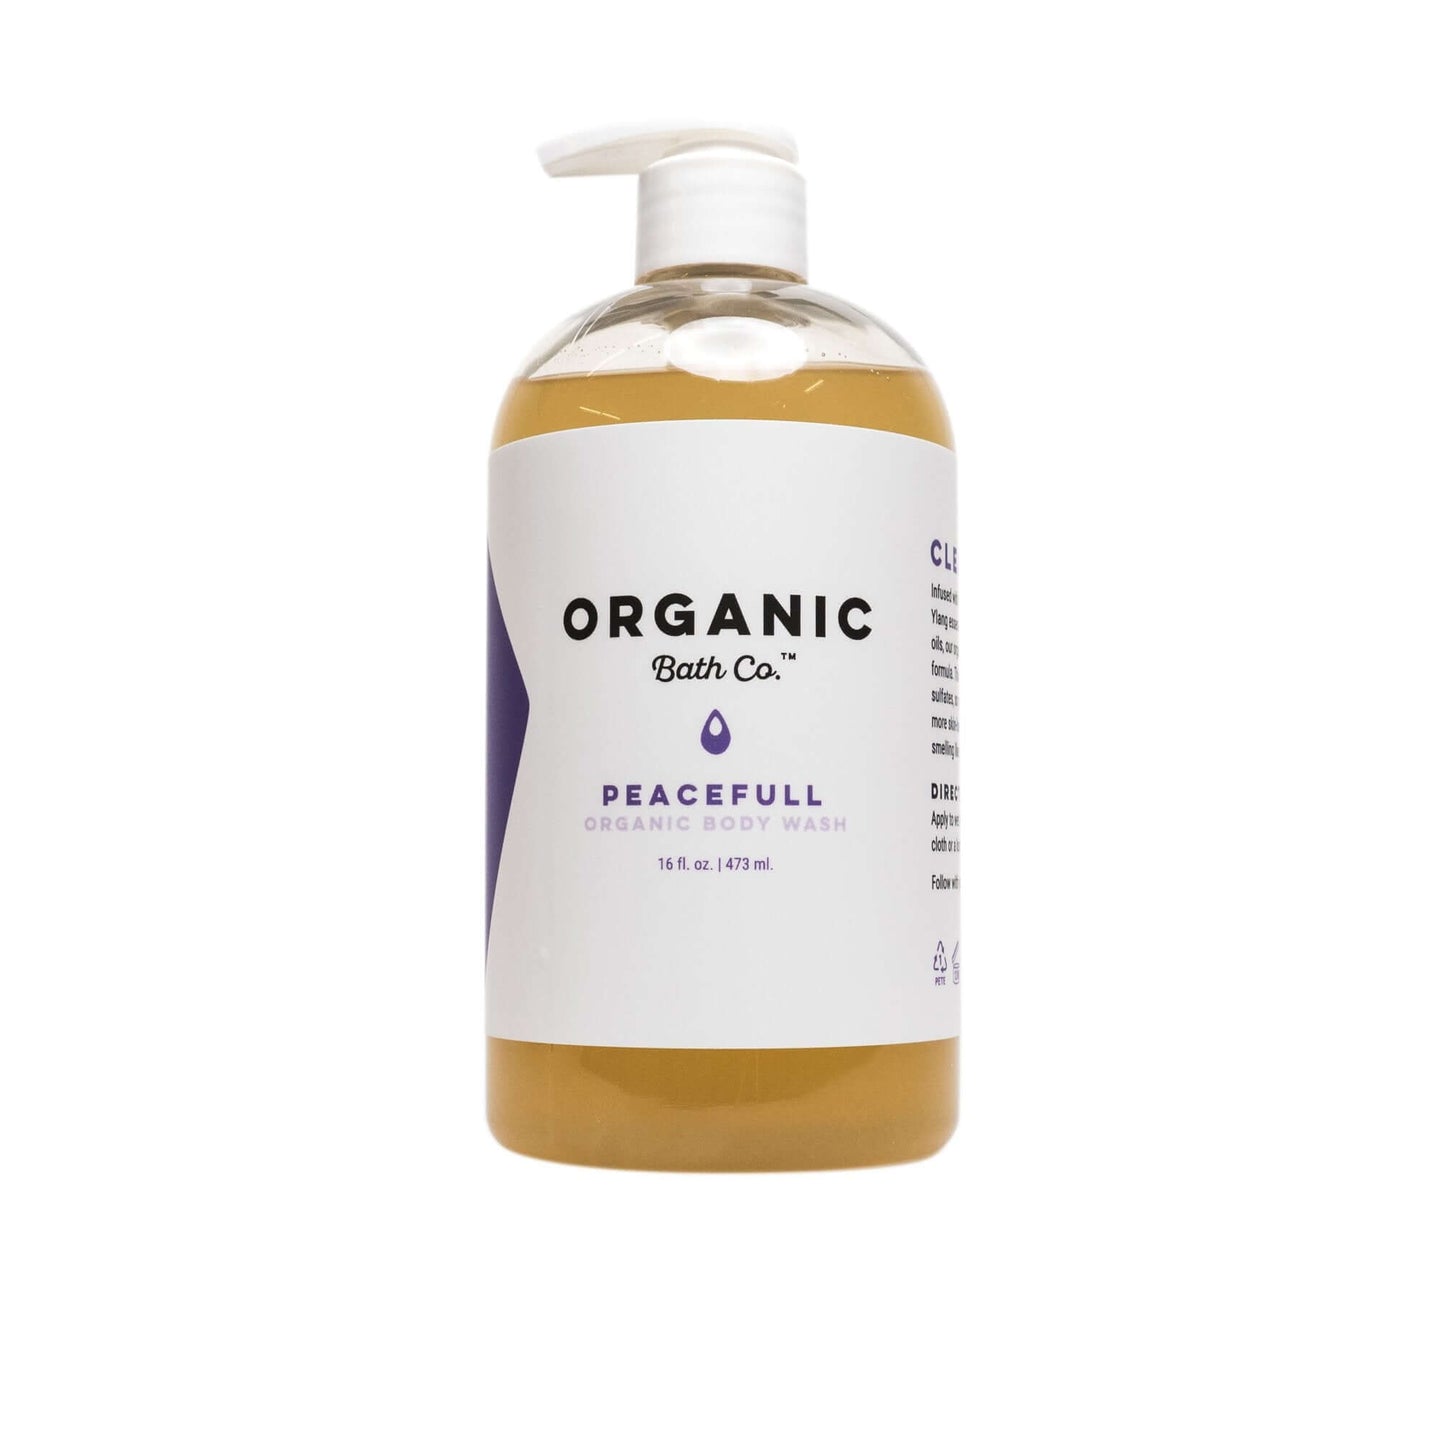 Organic Bath Co. Peacefull Body Wash